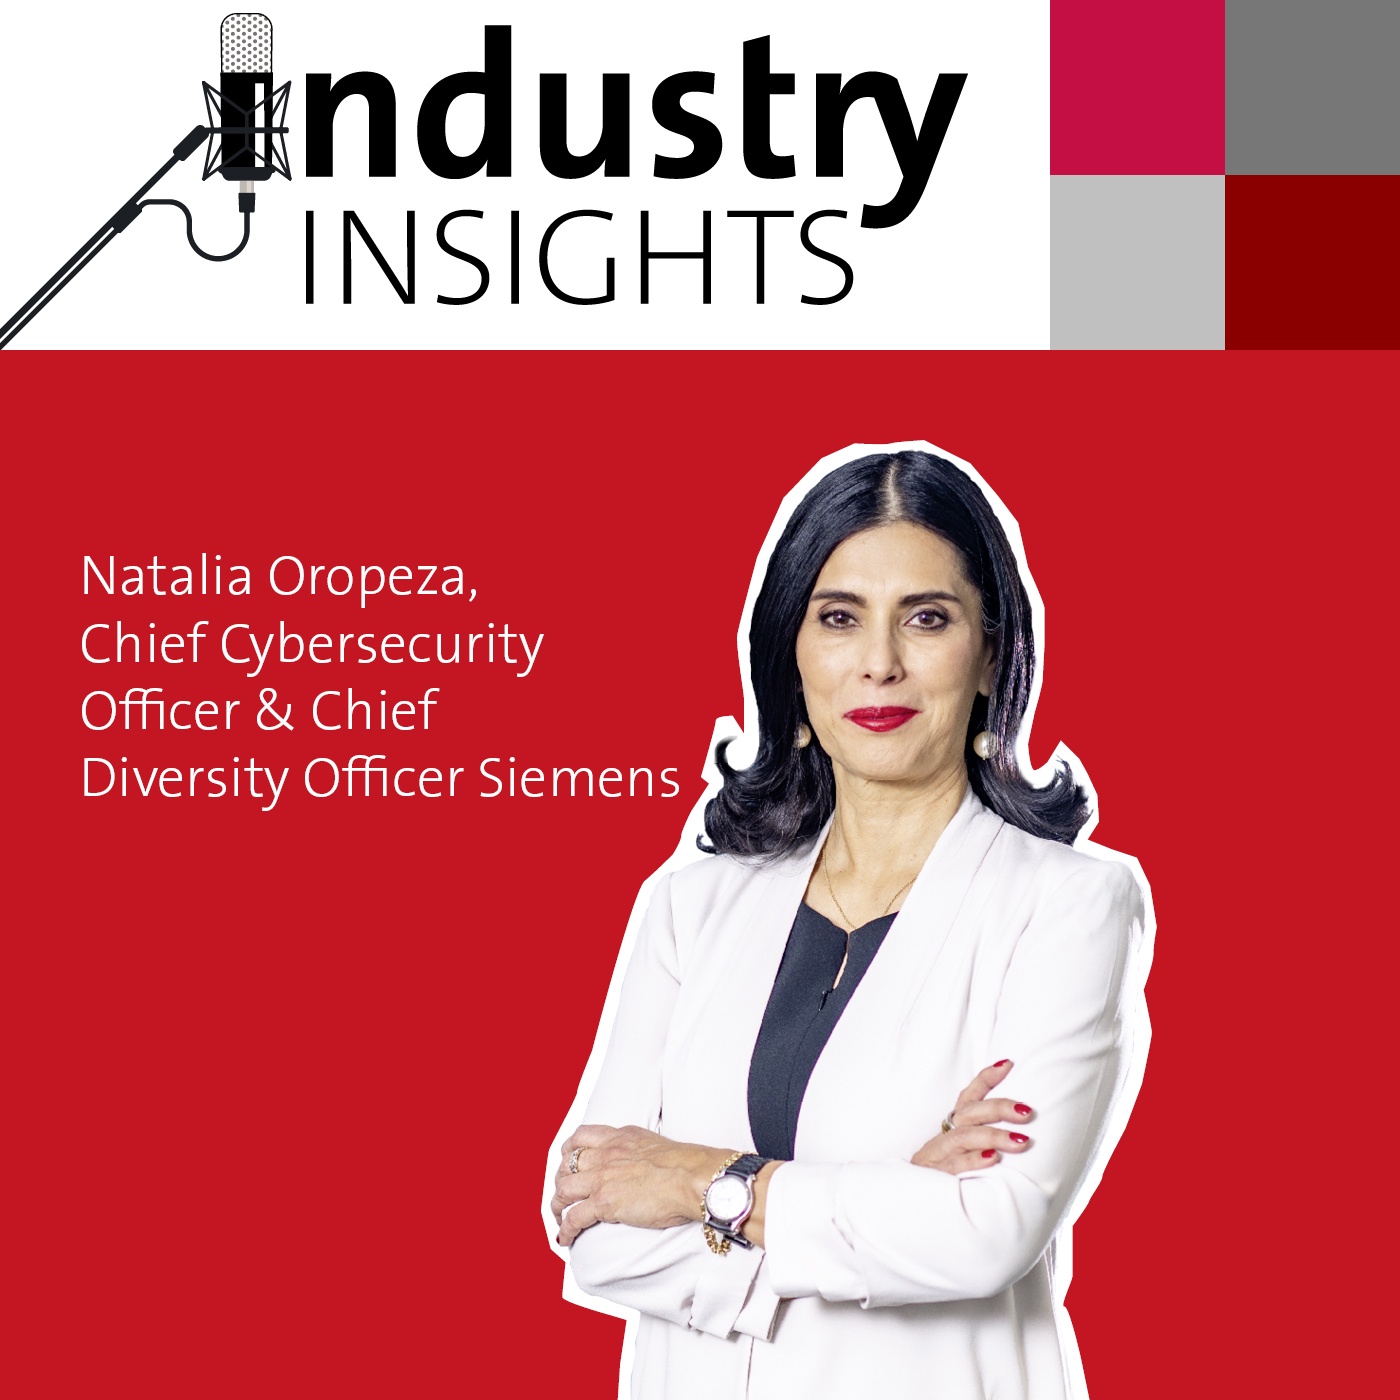 Siemens Chief Cybersecurity Officer Natalia Oropeza über Cyberattacken und Diversity in der Industrie